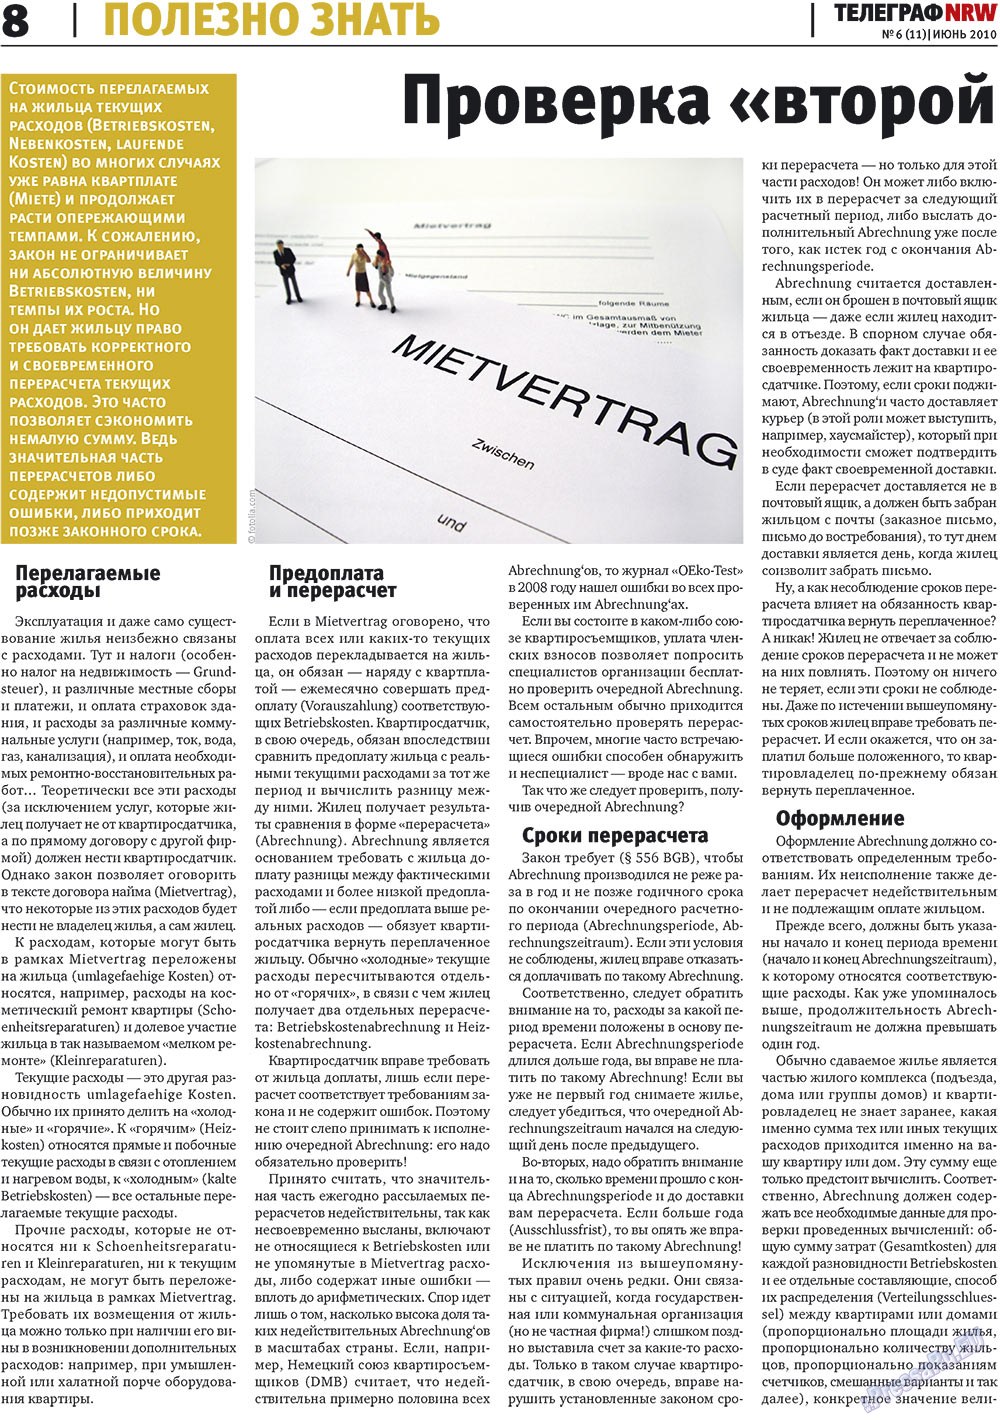 Телеграф NRW (газета). 2010 год, номер 6, стр. 8